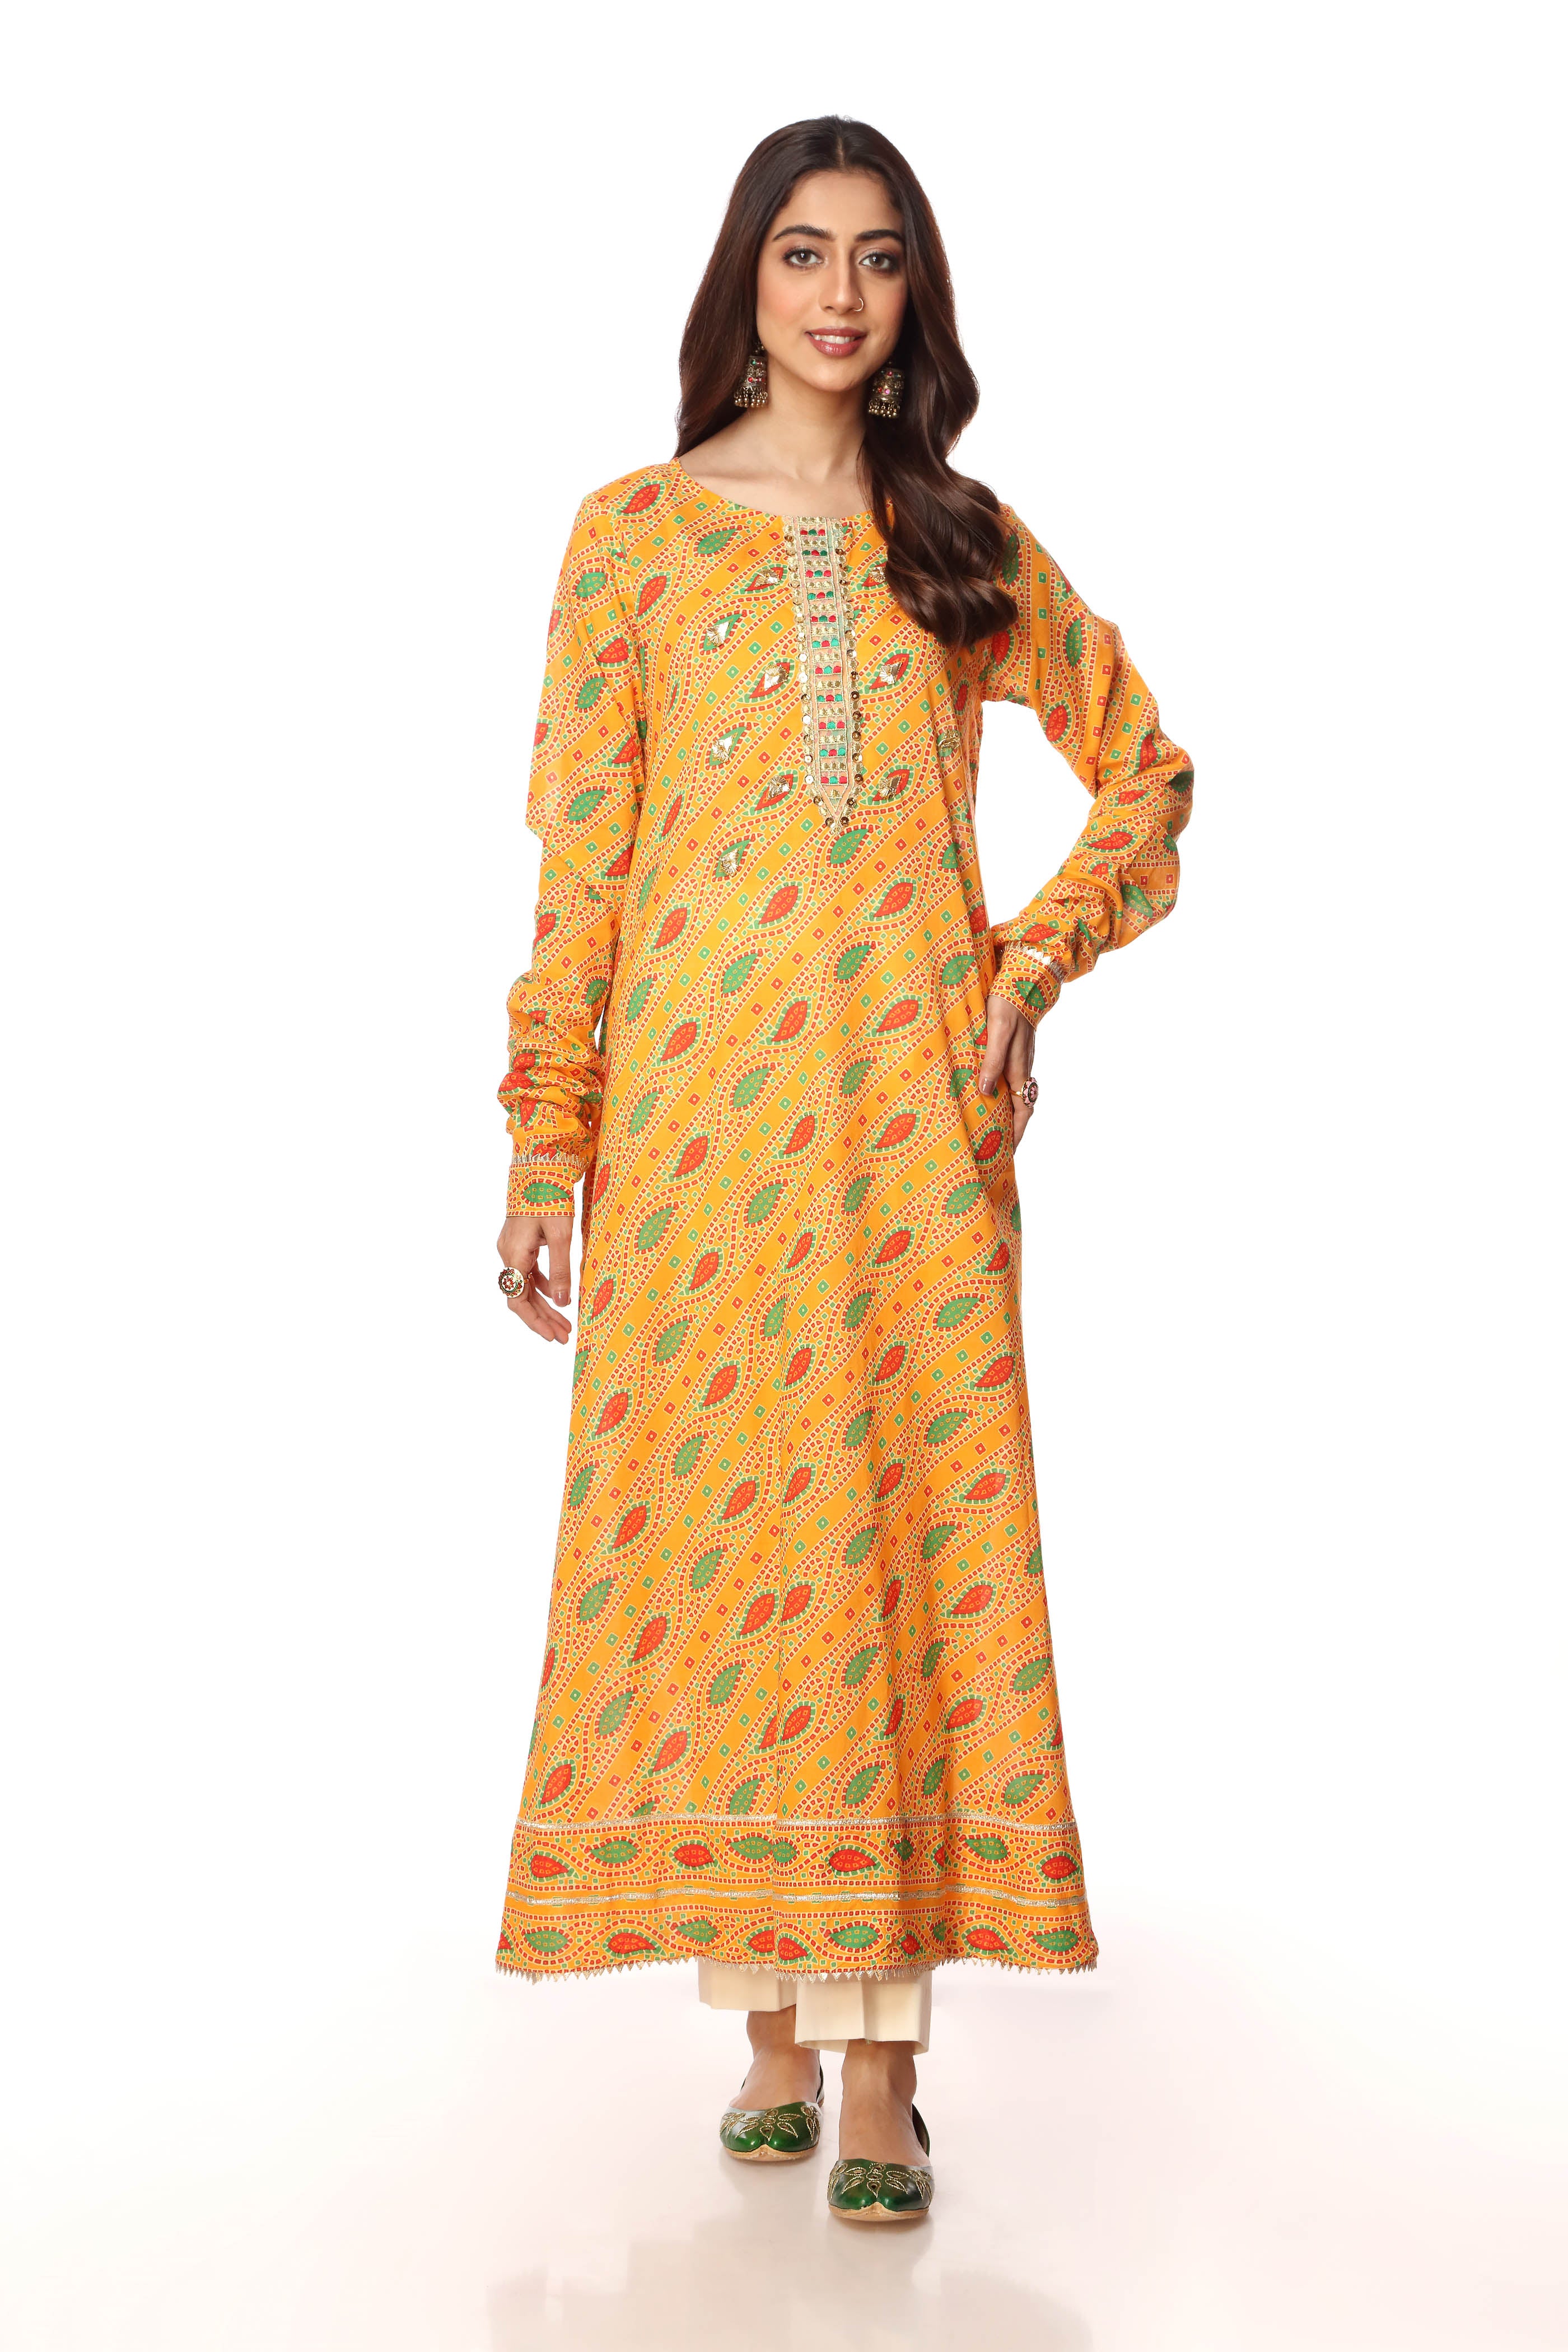 Coloured Tukri 1 in Multi coloured Printed Lawn fabric